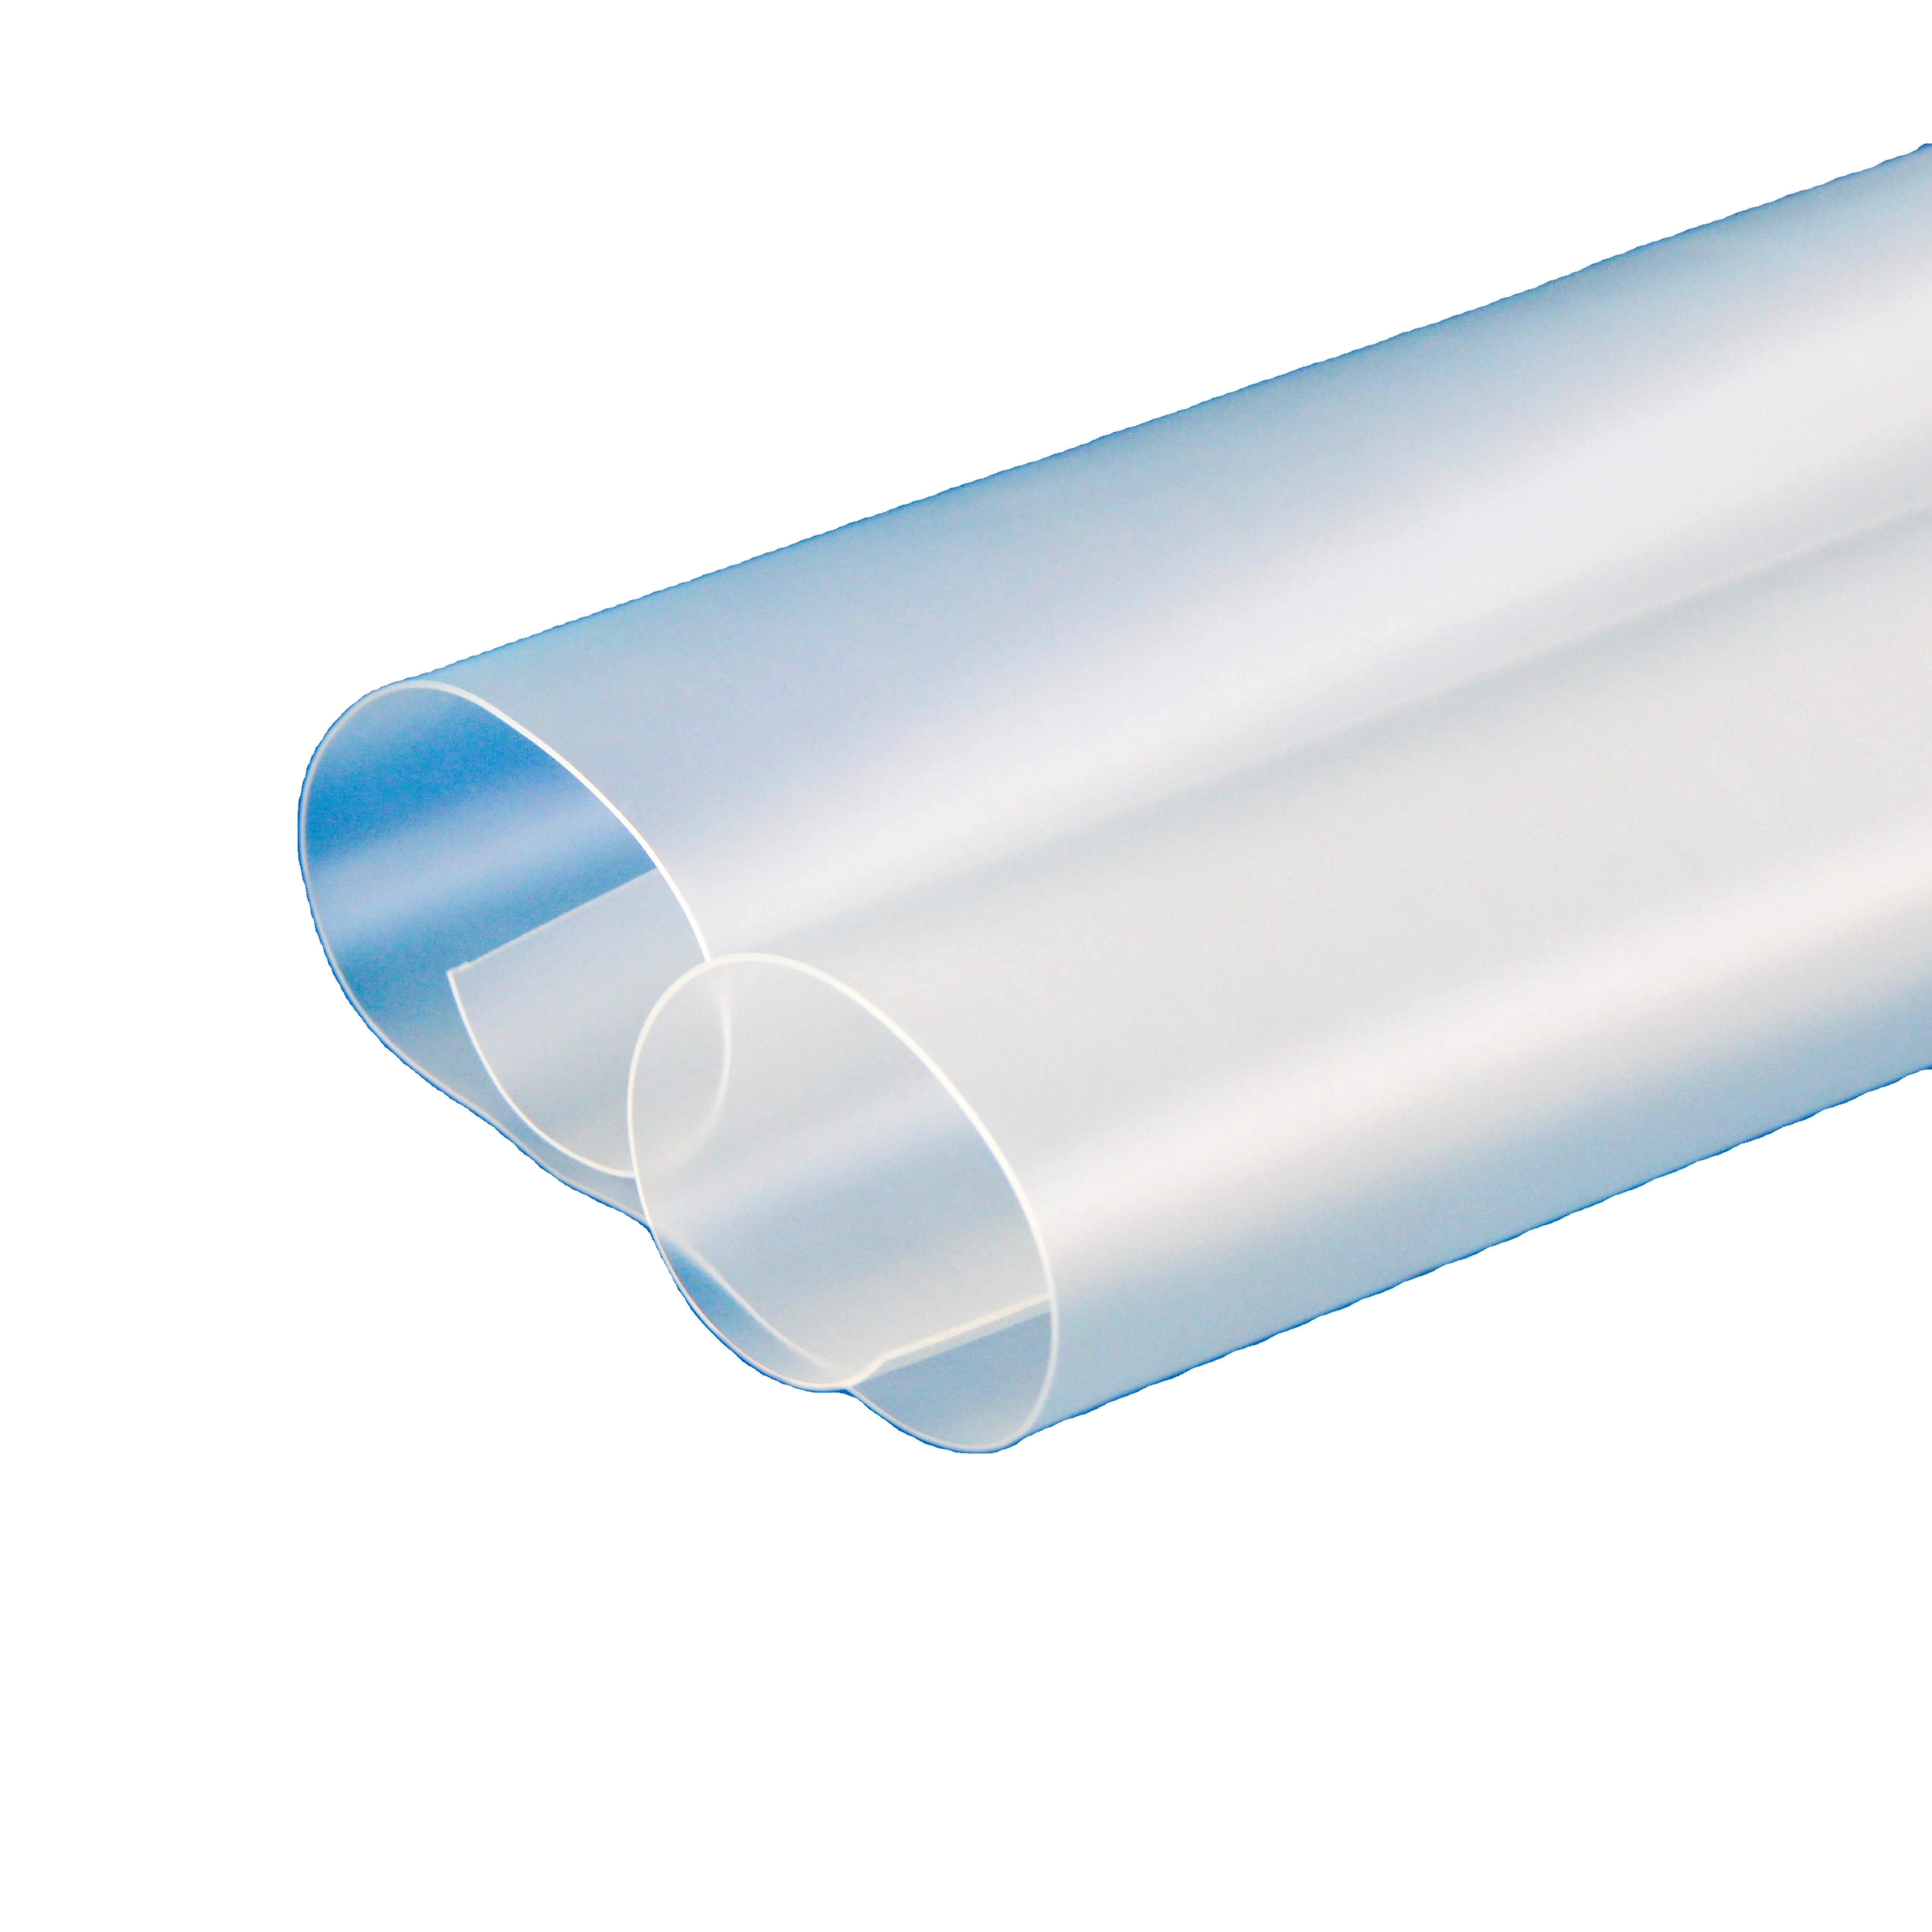 フロントガラス防弾ガラスウレタンベースのエラストマー熱可塑性ポリウレタンTPUフィルムシートのサンダイト工場供給